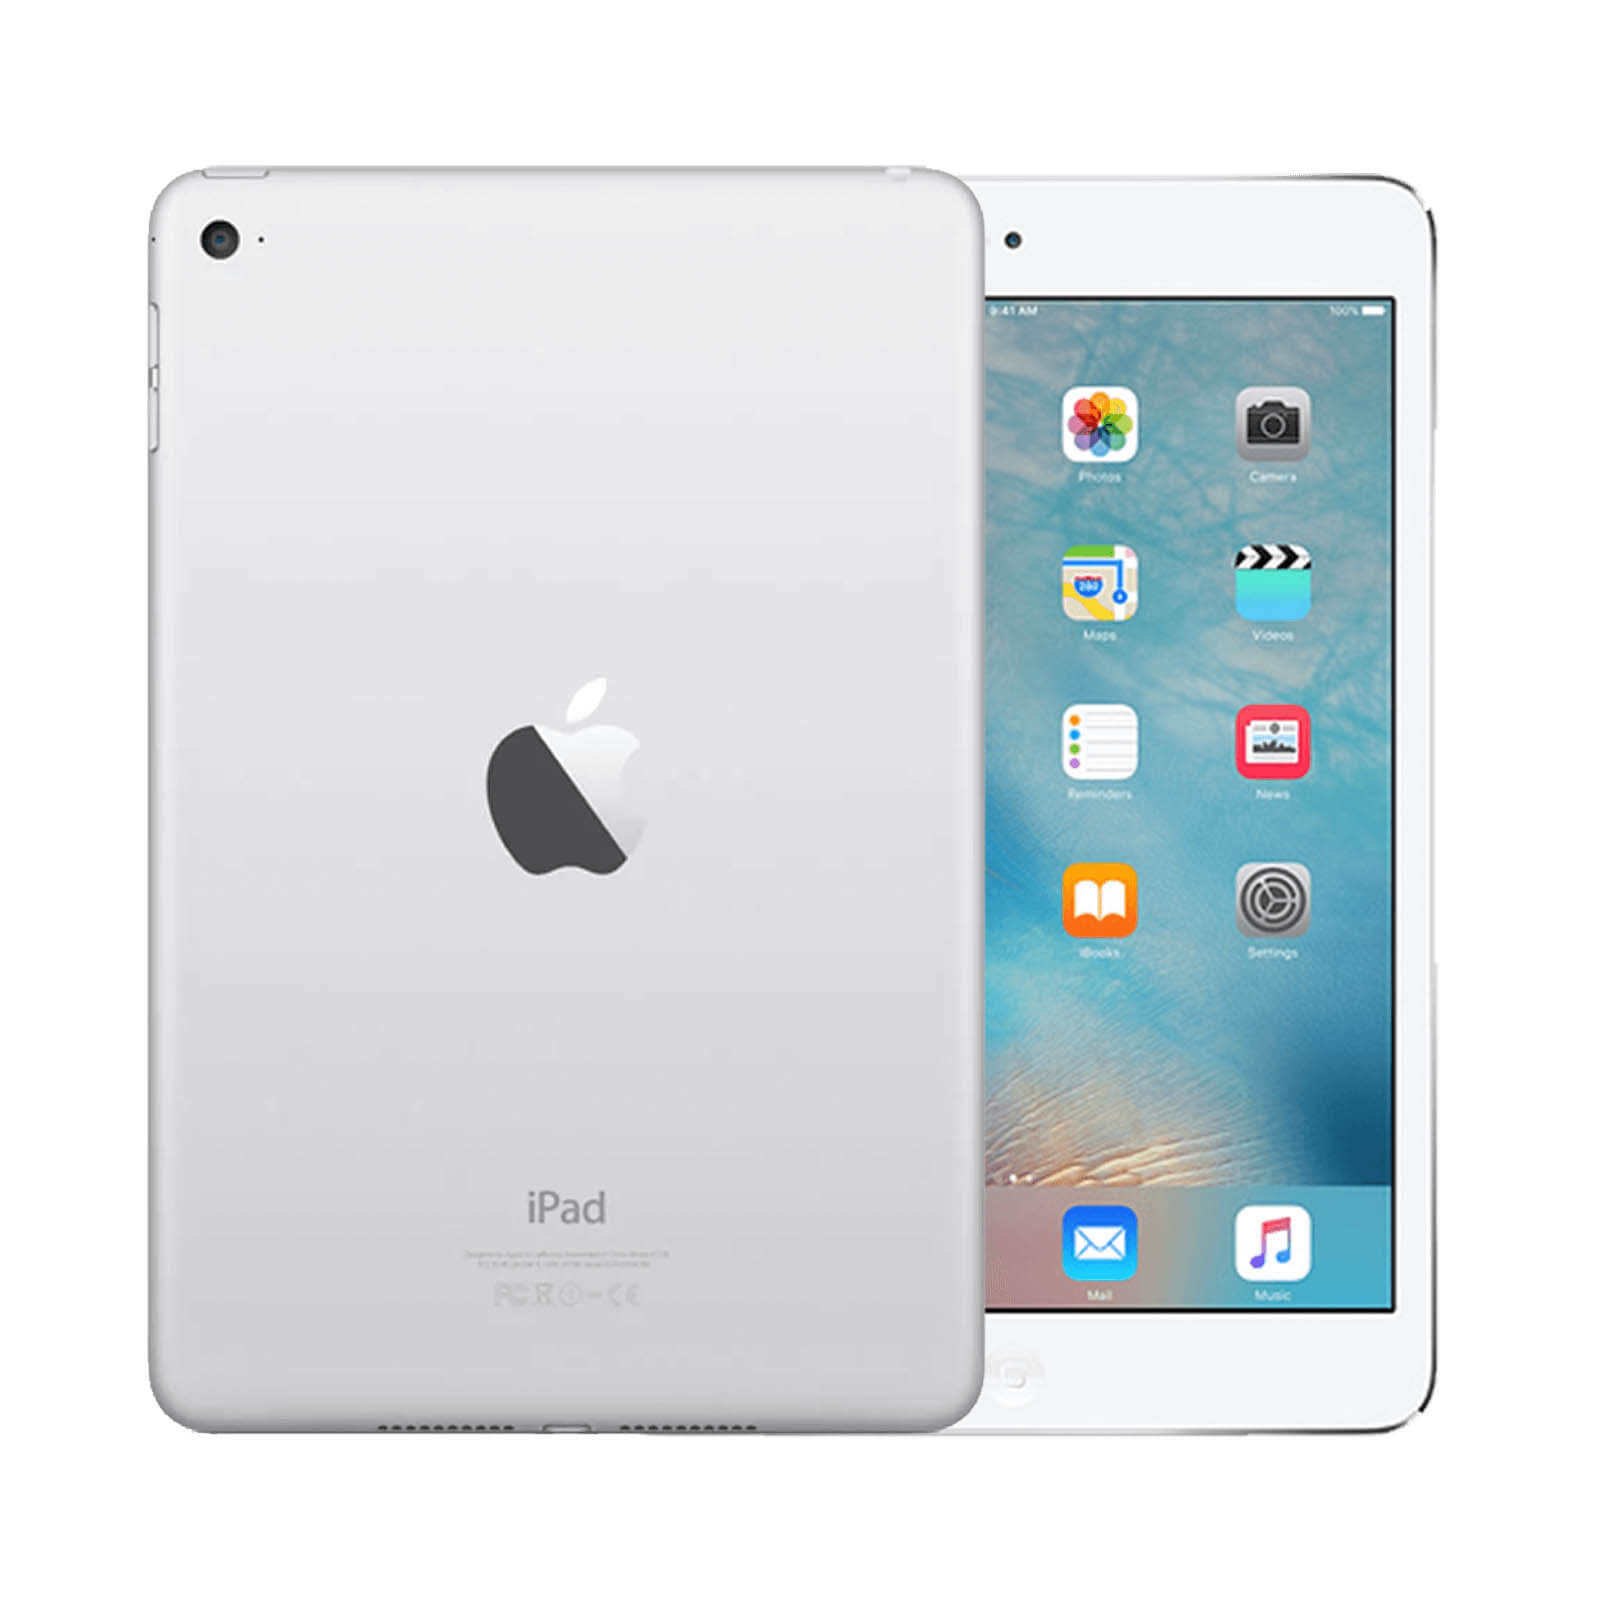 Apple iPad Mini 4 16GB Silver WiFi - Very Good 16GB Silver Very Good